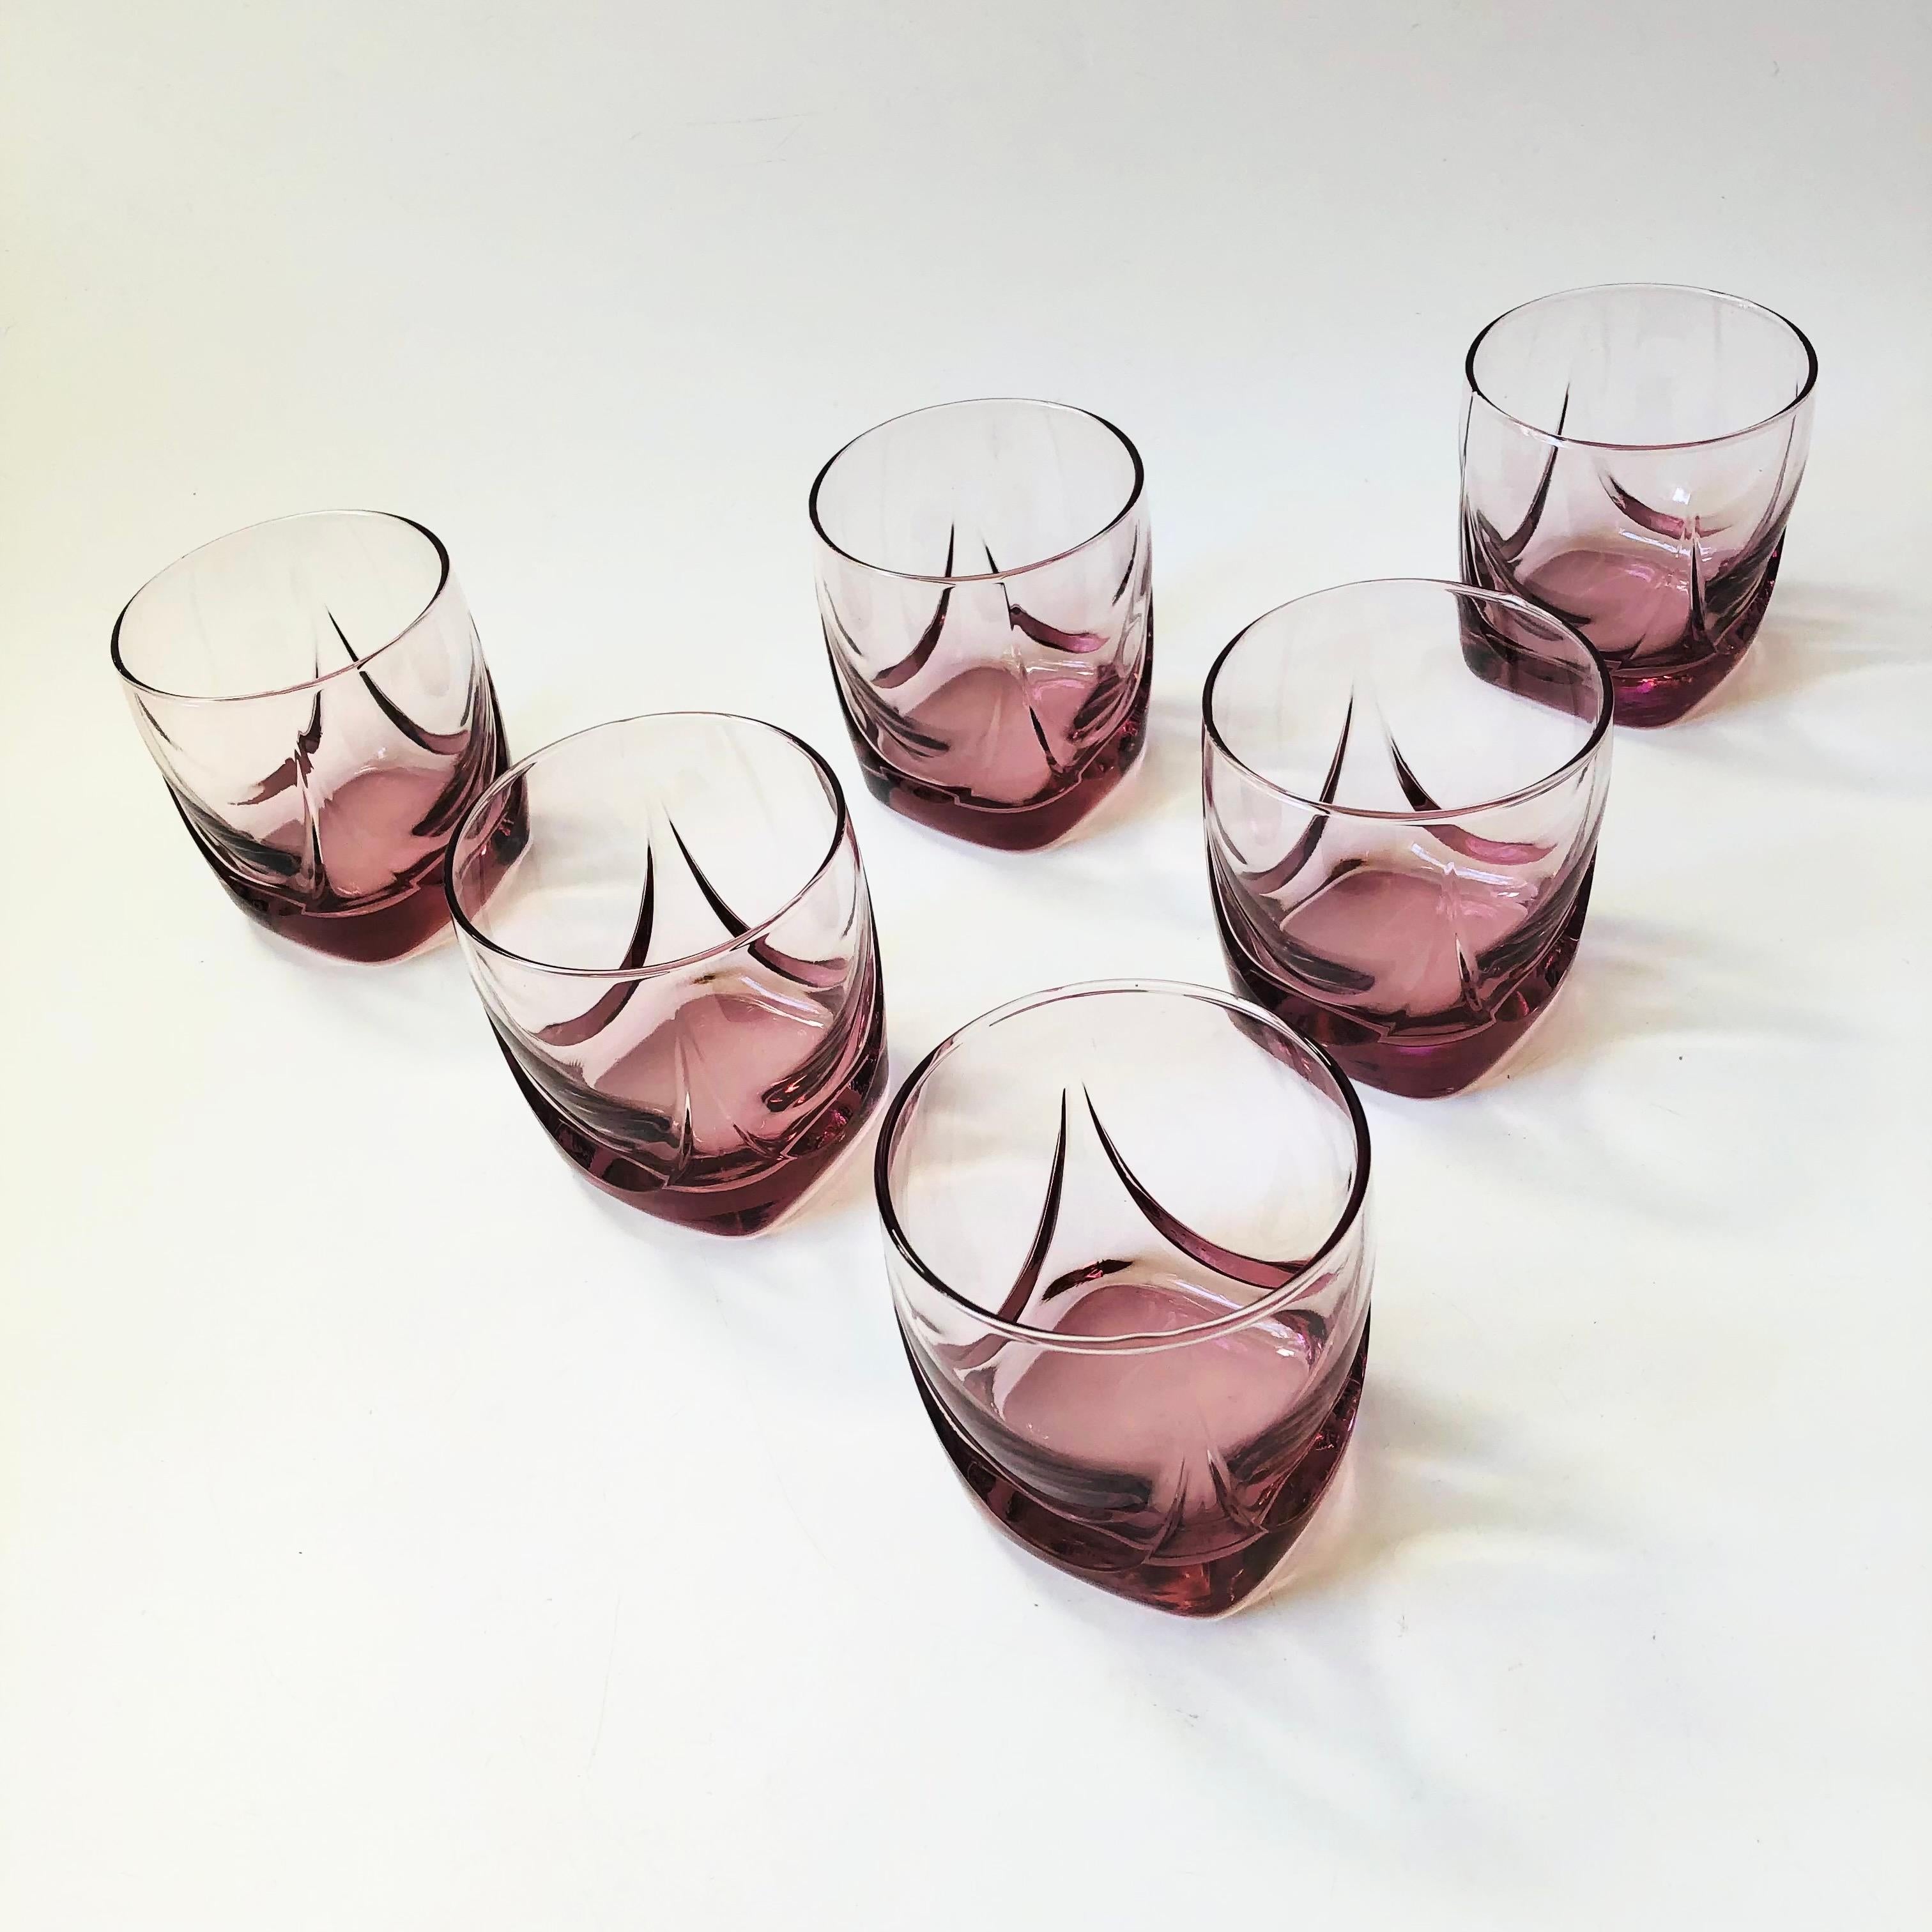 Un ensemble de 6 gobelets à cocktail lowball vintage. Belle couleur rose-pourpre pâle avec un détail unique à la base où le verre s'épaissit. Parfait pour les cocktails ou les verres à eau.

